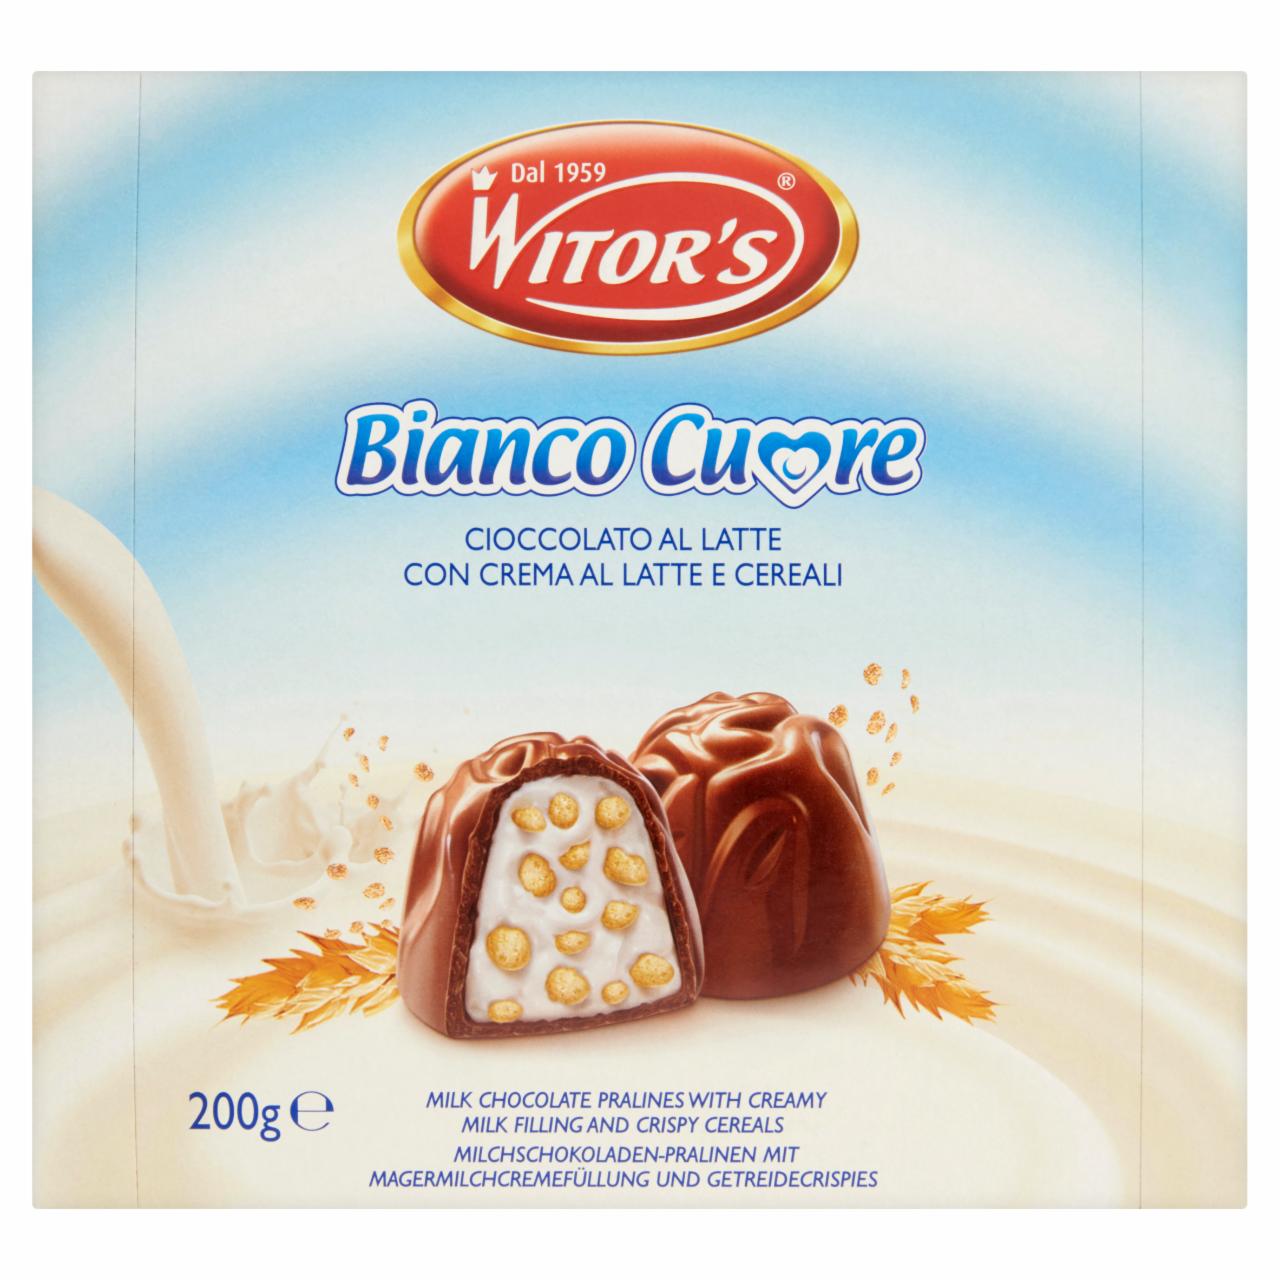 Képek - Witor's Bianco Cuore tejcsokoládés praliné tejkrémes töltettel és gabonapelyhekkel 200 g